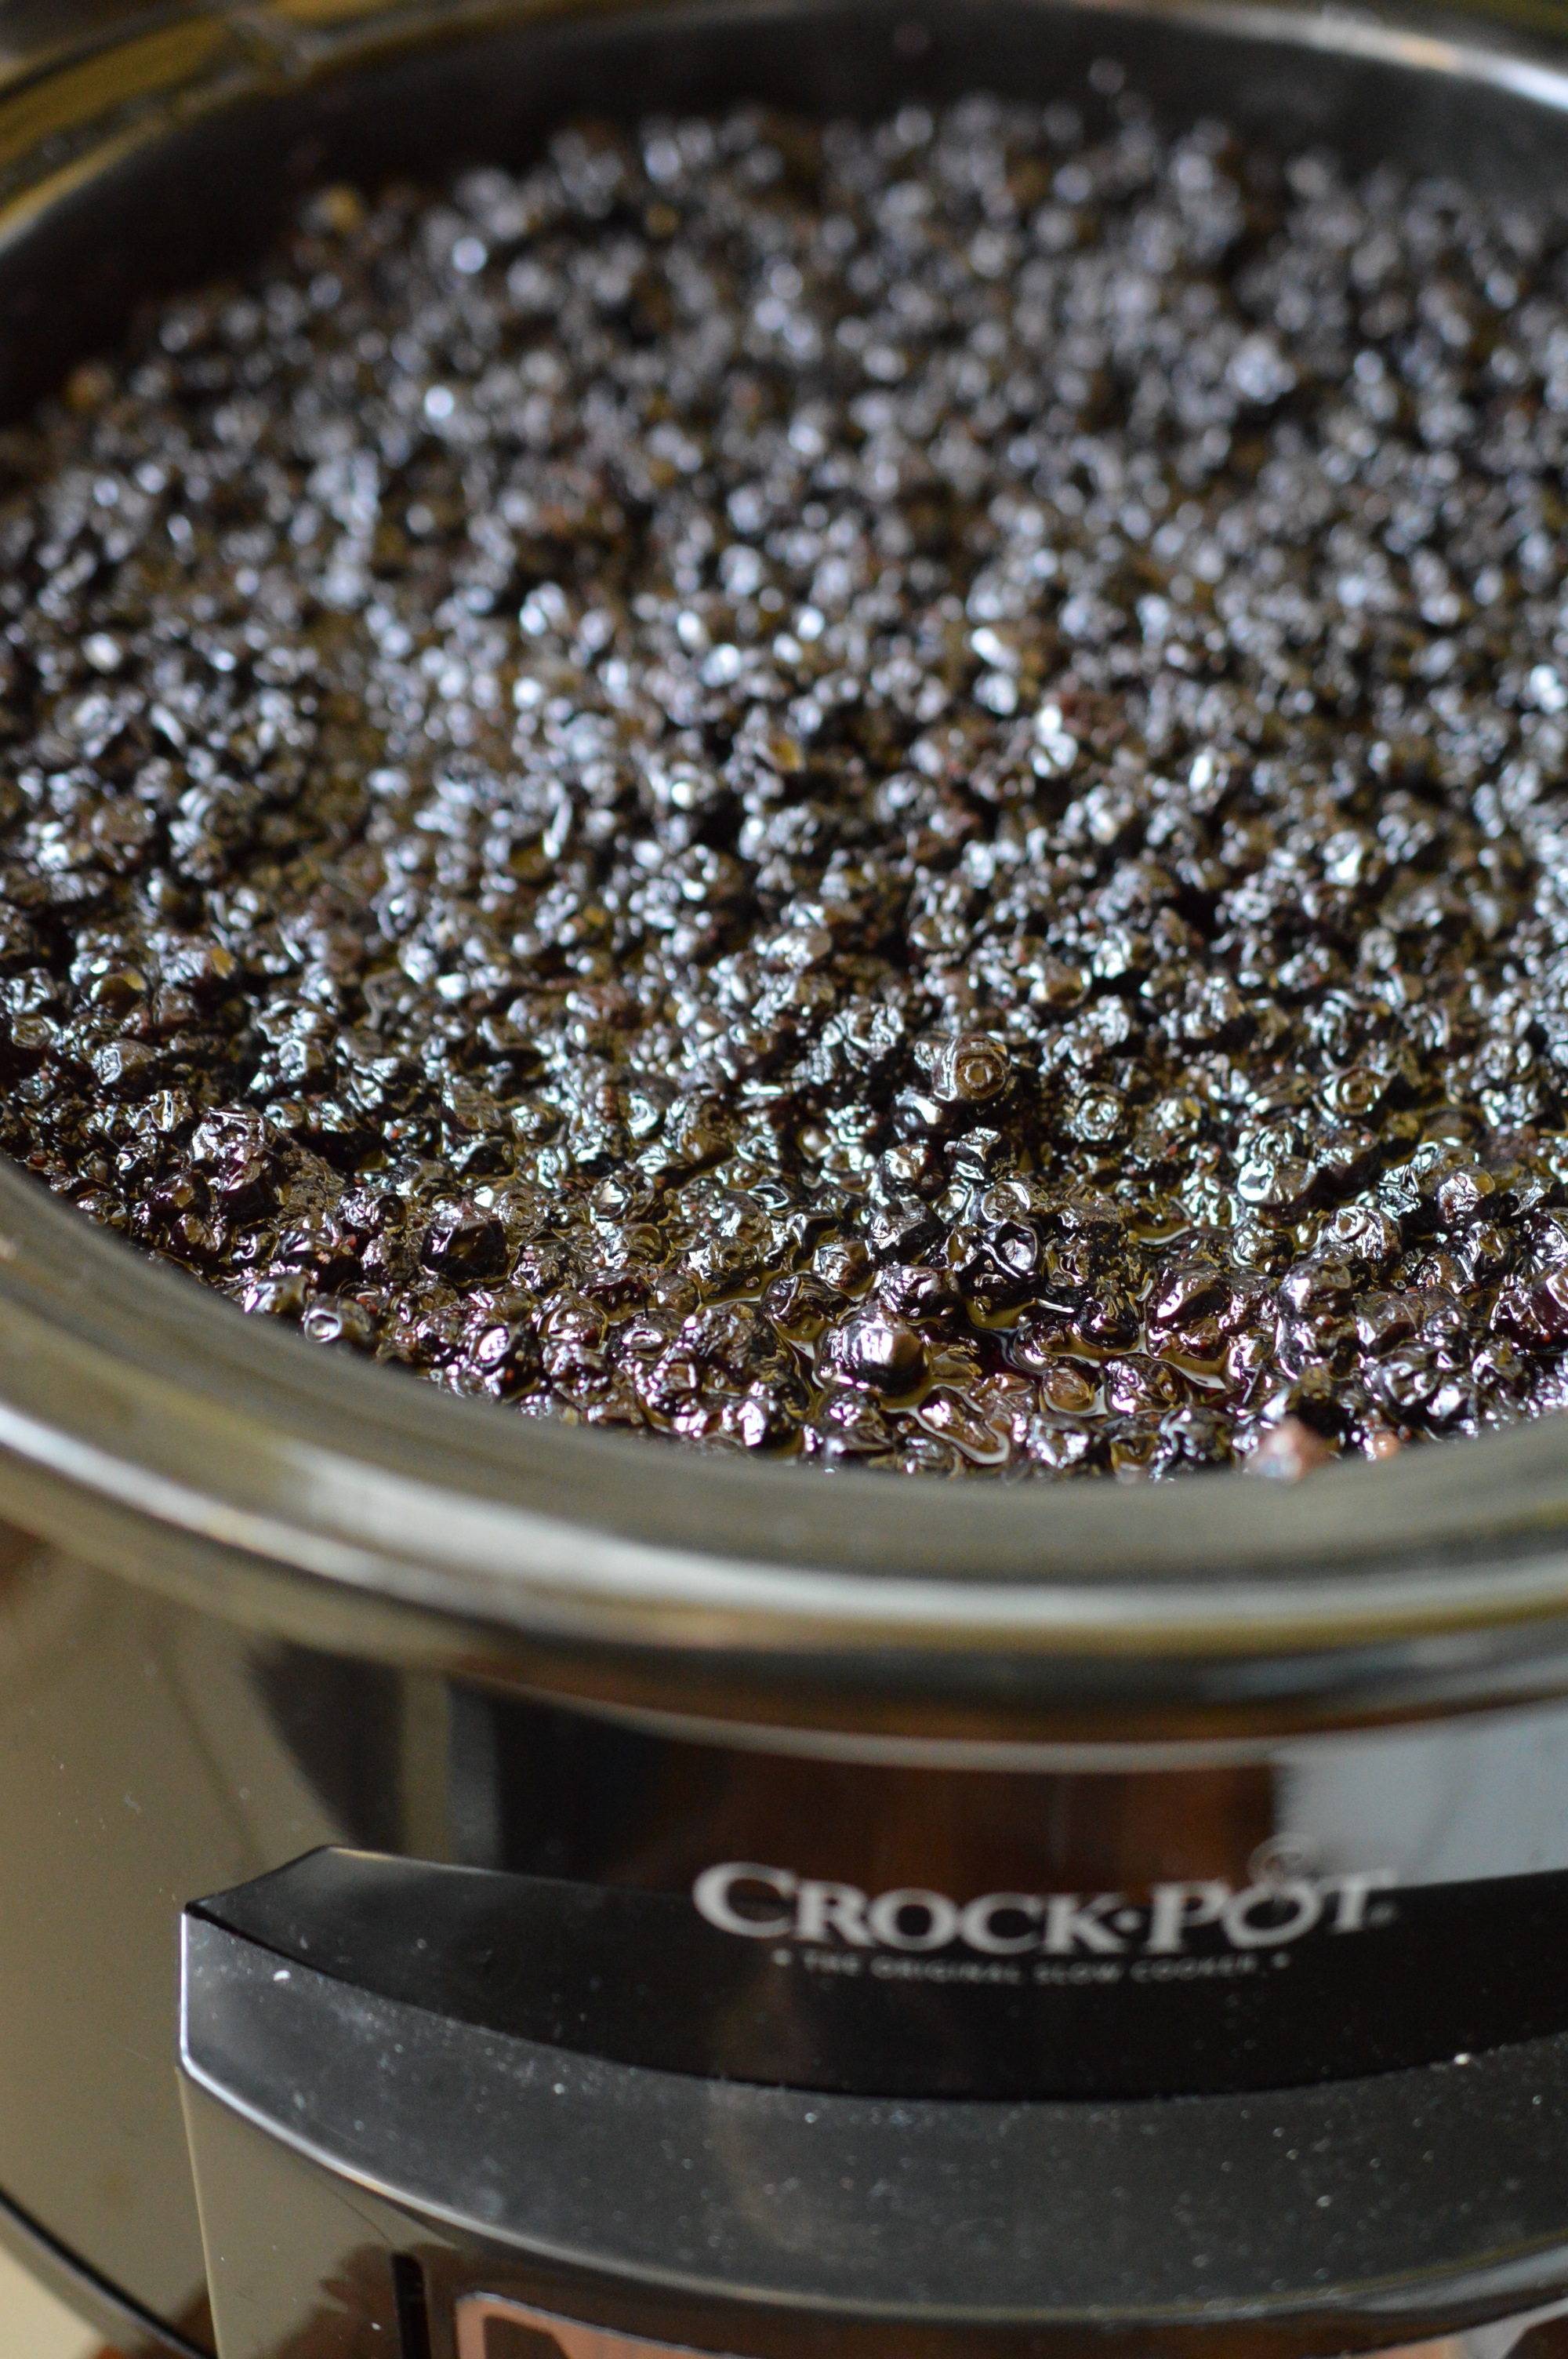 Dulceata de afine la slow cooker Crock-Pot 4,7 L